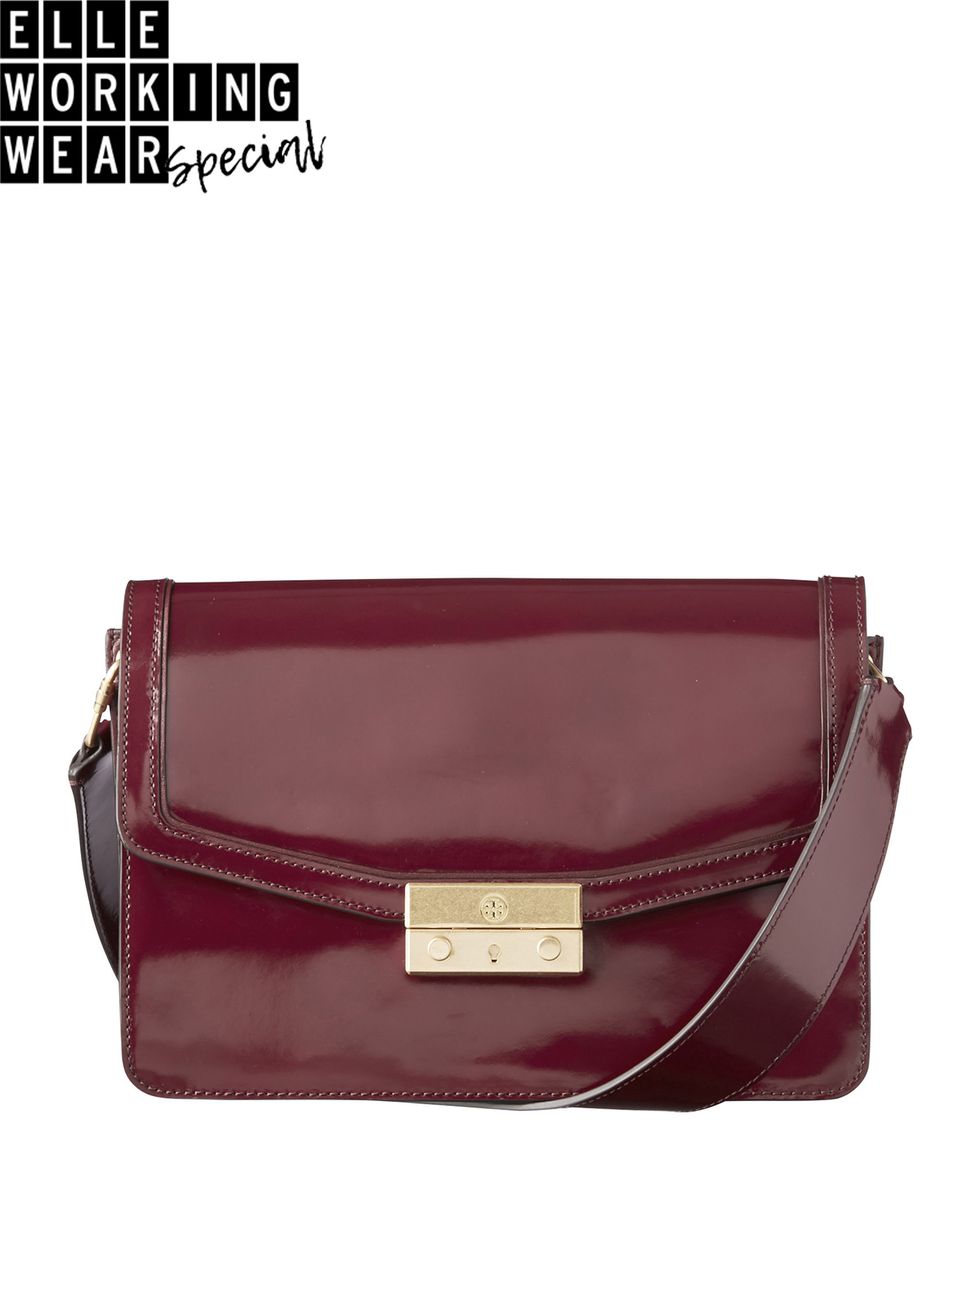 Bag, Handbag, Brown, Maroon, Fashion accessory, Leather, Purple, Shoulder bag, Material property, Messenger bag, 